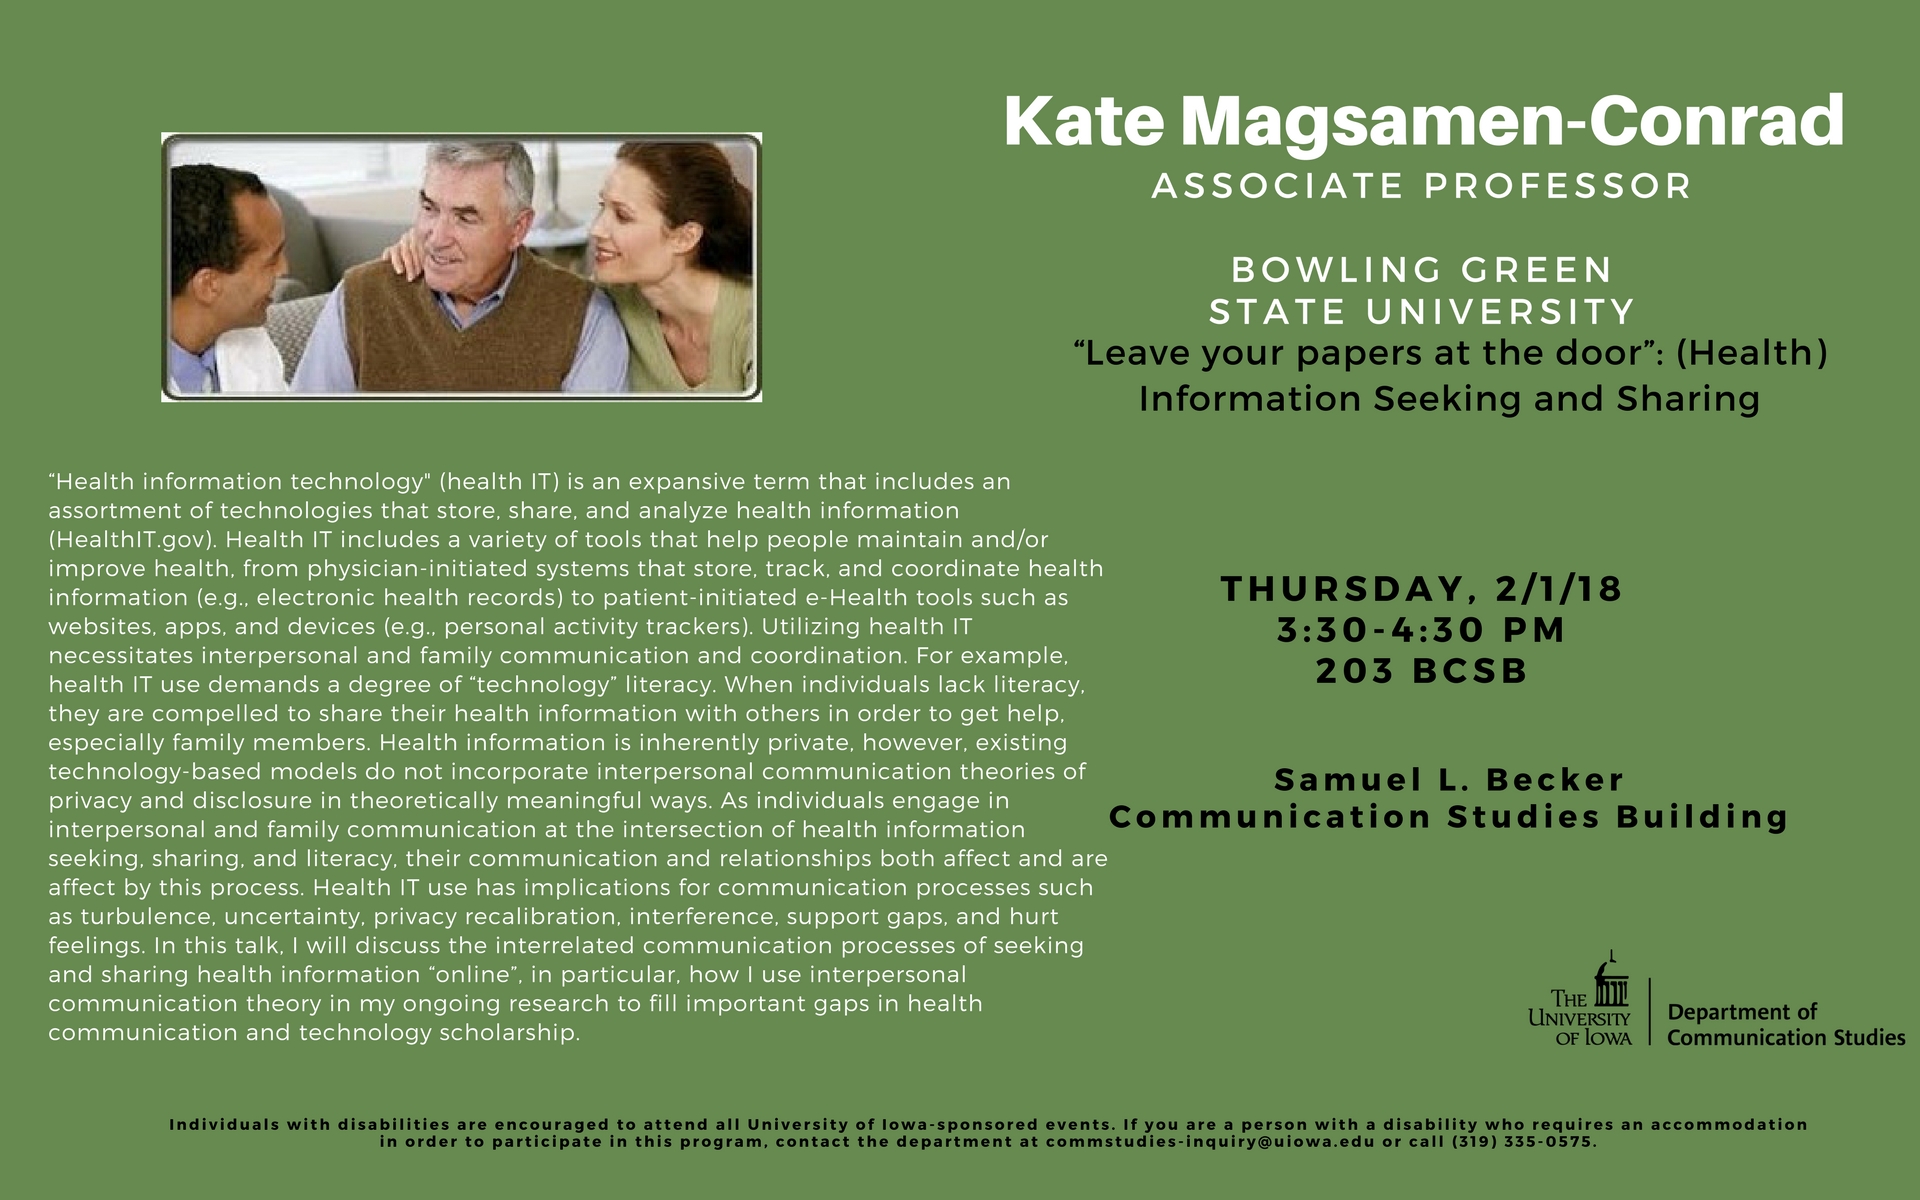 Kate Magsamen-Conrad research talk